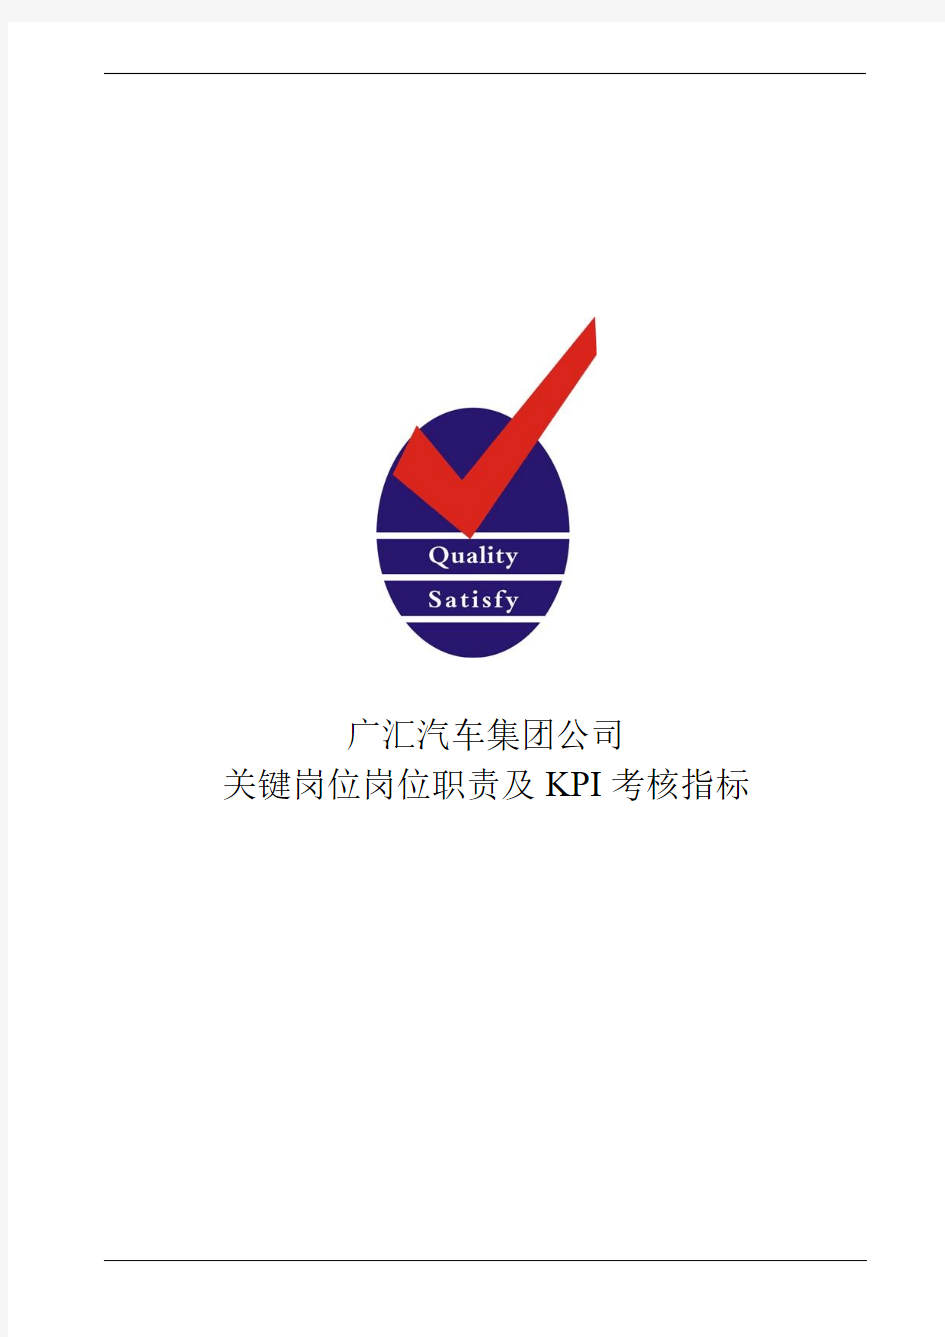 广汇汽车集团公司关键岗位岗位职责及KPI考核指标